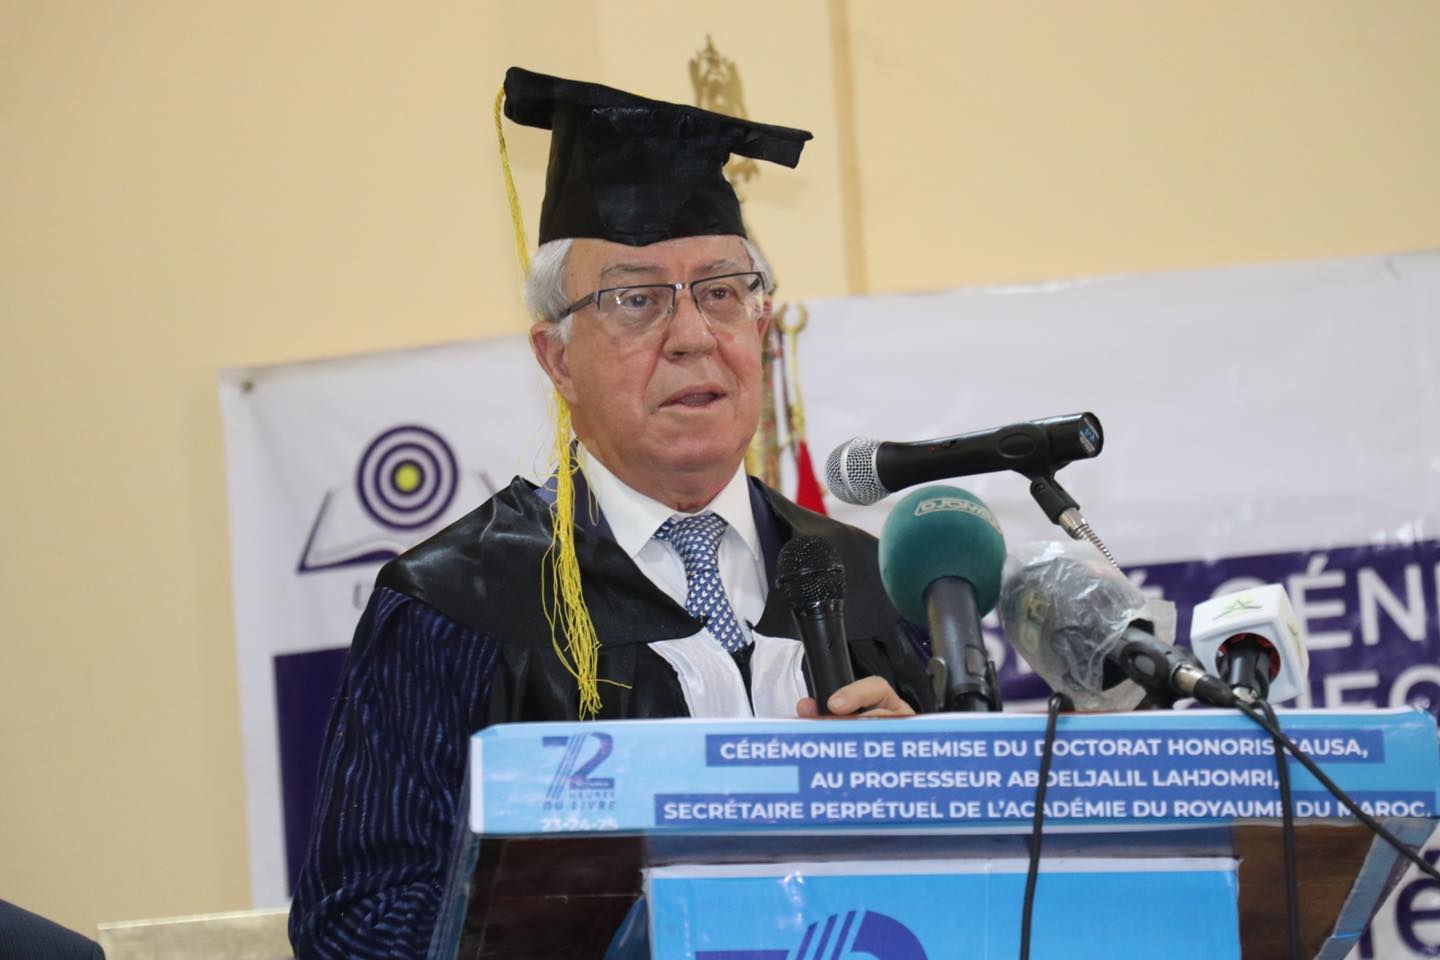 Abdeljalil Lahjomri reçoit le titre de docteur honoris causa de l'université de Conakry en Guinée.